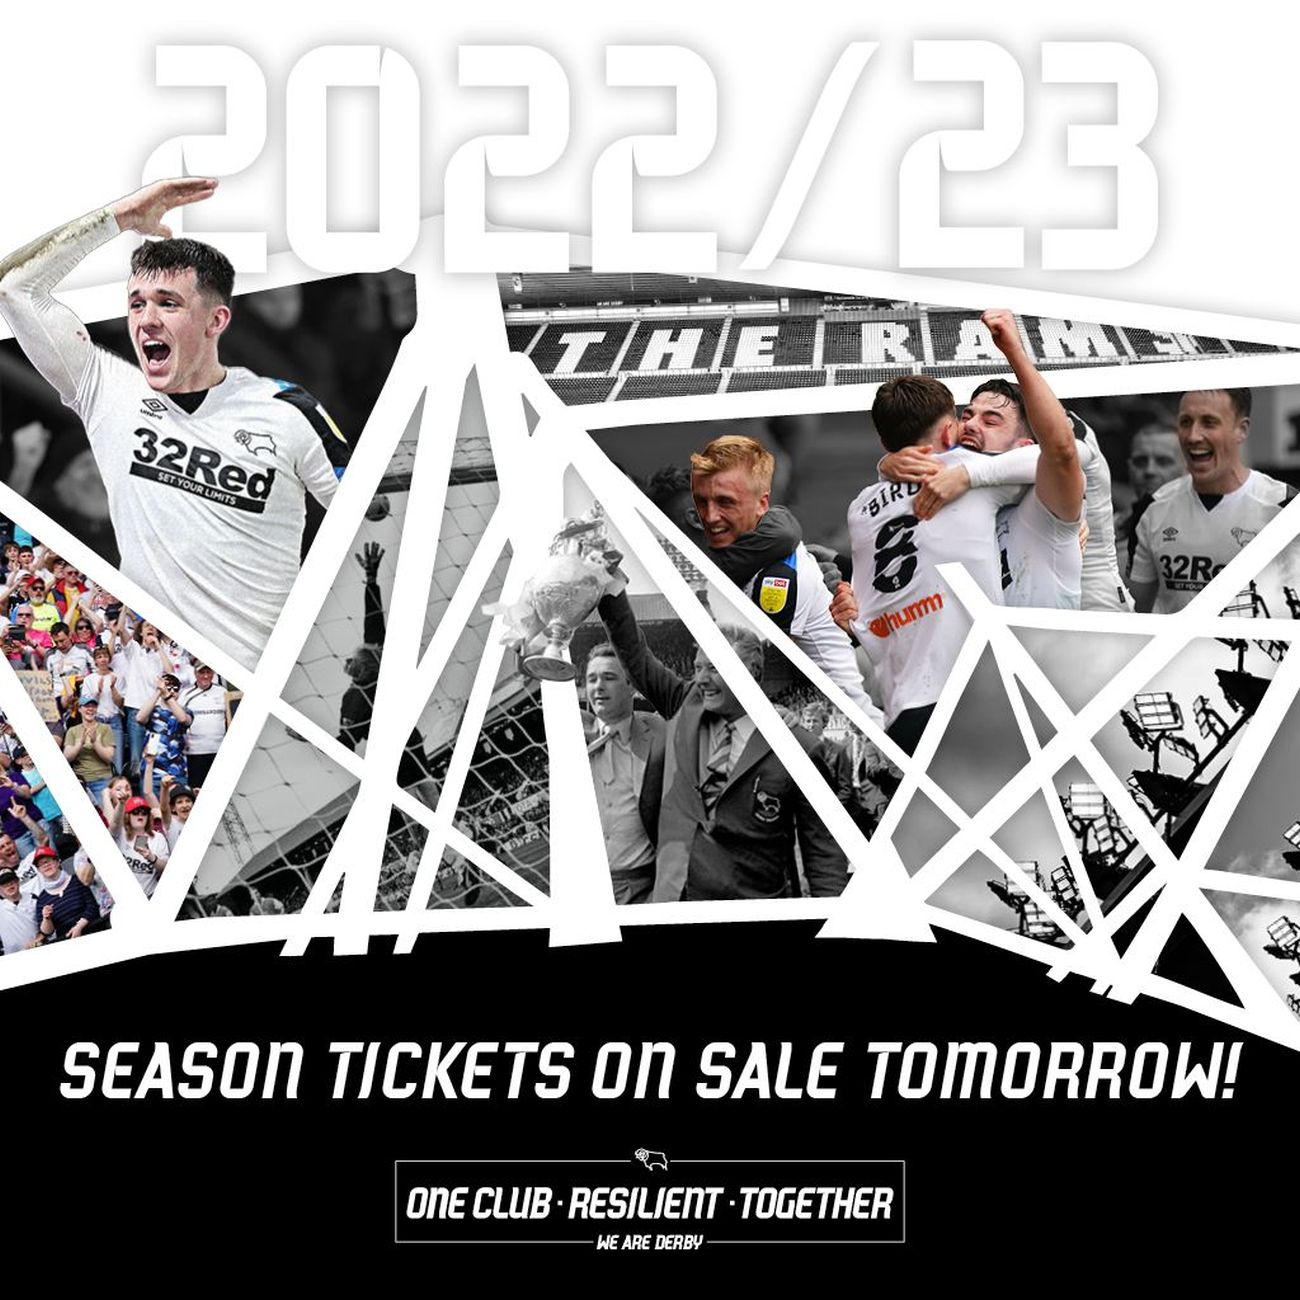 2022/23 Season Ticket Information Confirmed - Blog - Derby County